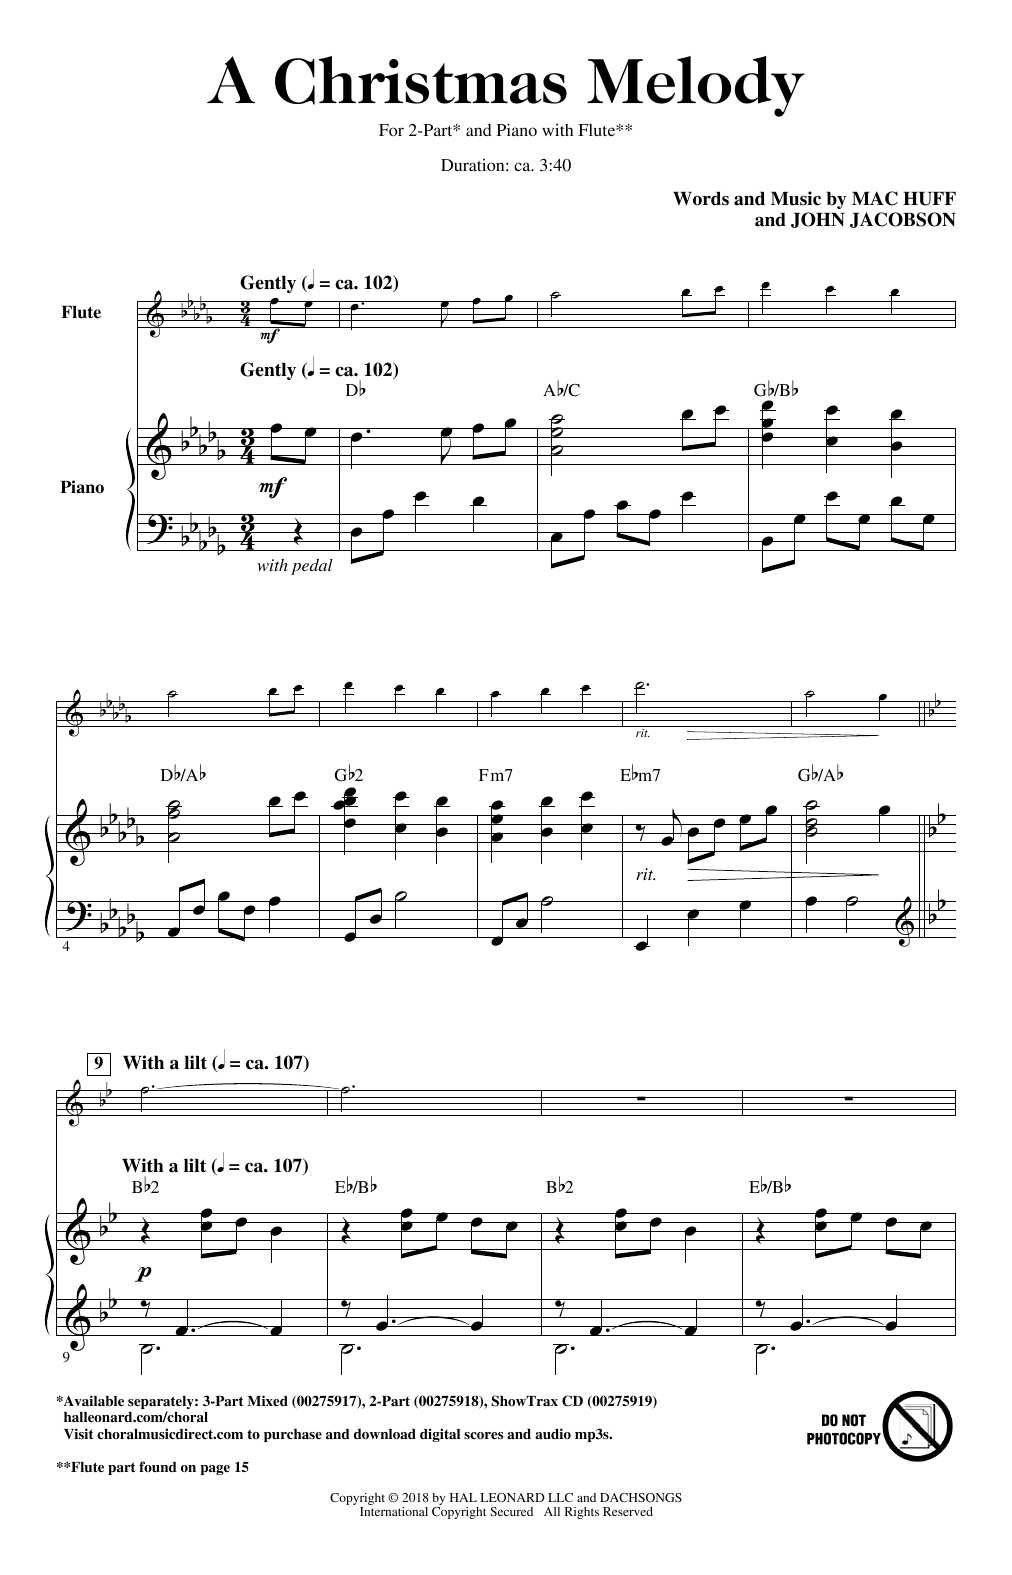 A Christmas Melody (2-Part Choir) von John Jacobson, Mac Huff